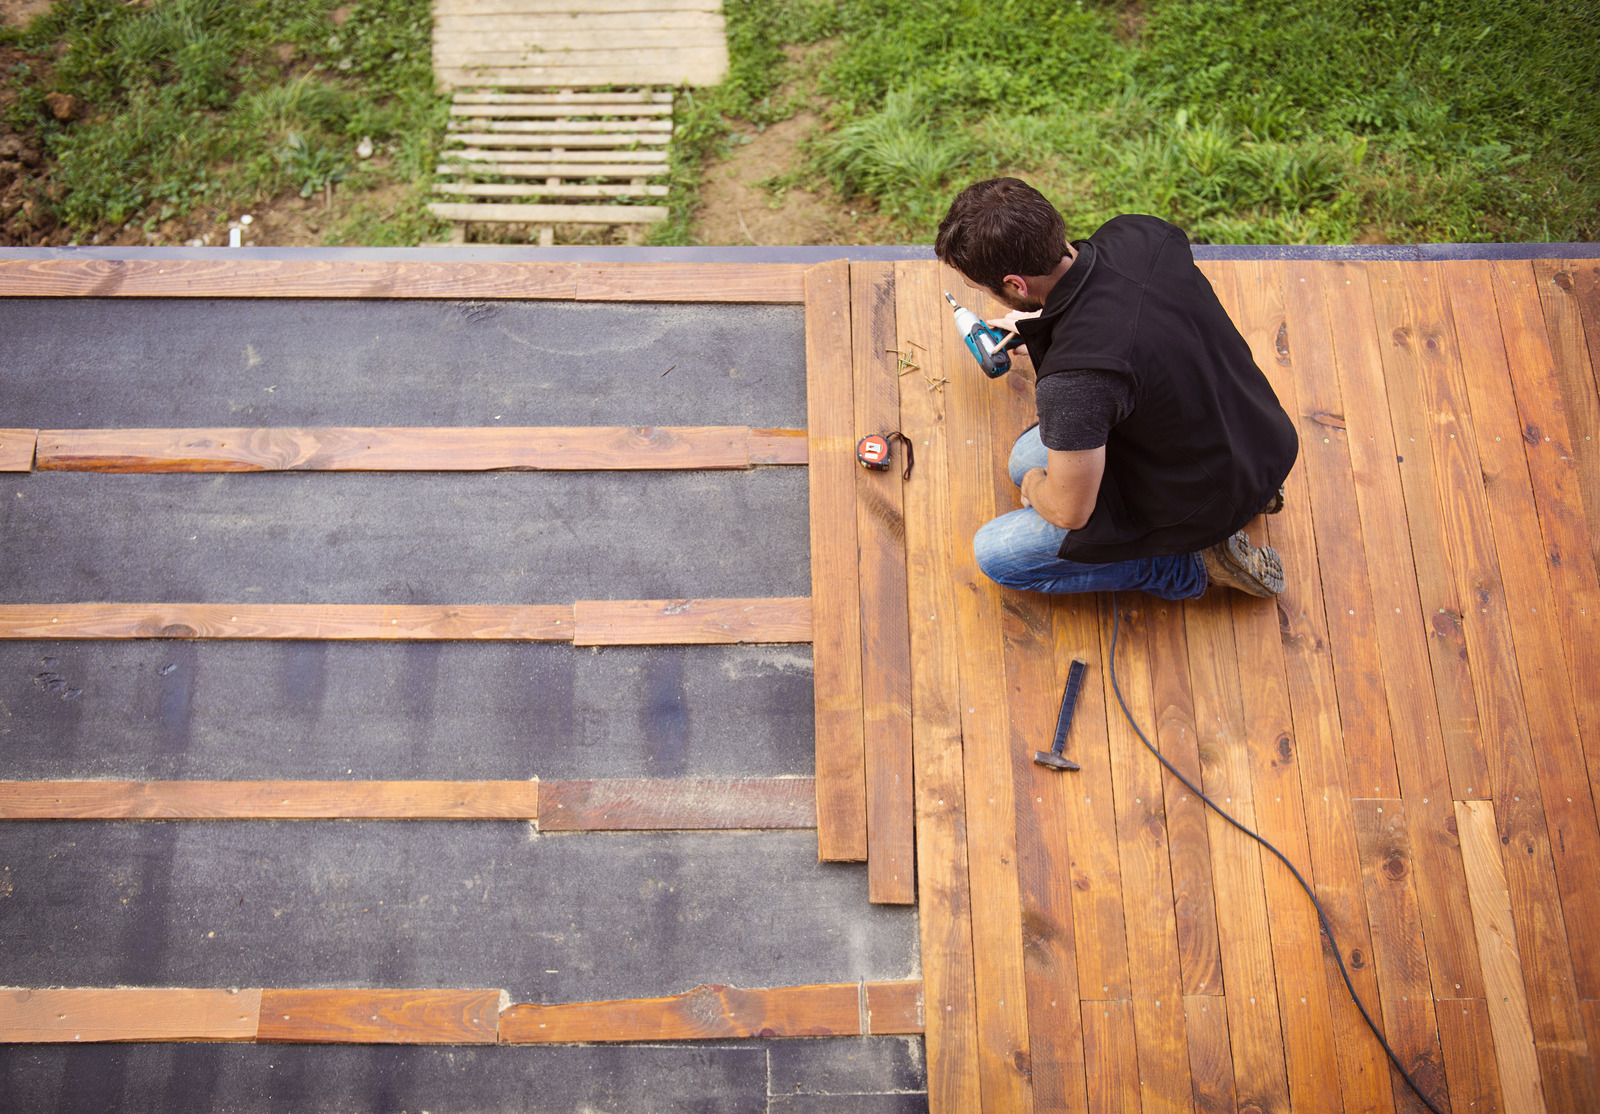 Handyman installing wooden flooring